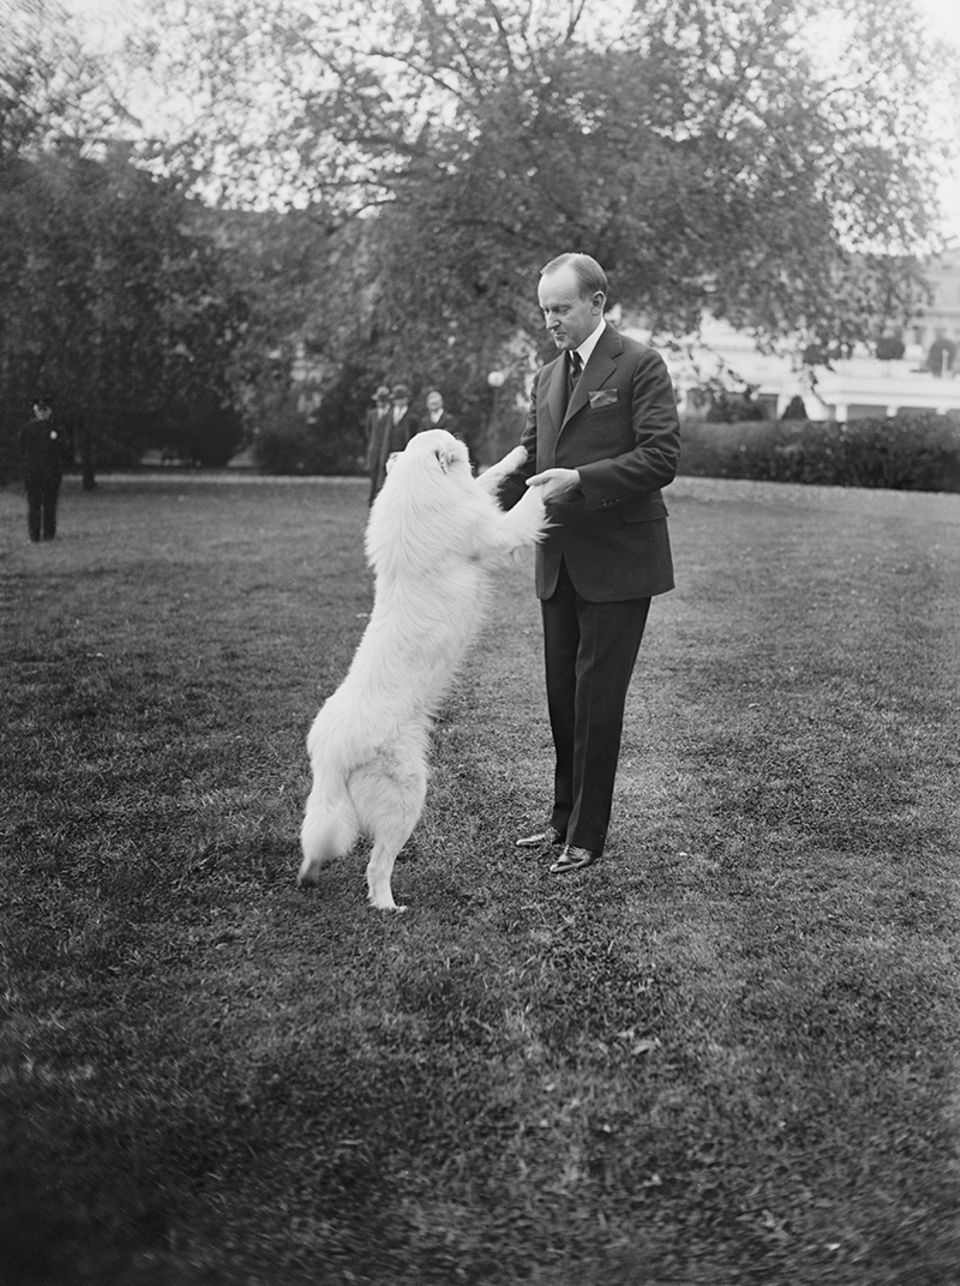 U.S. Präsident Calvin Coolidge mit seinem Hund